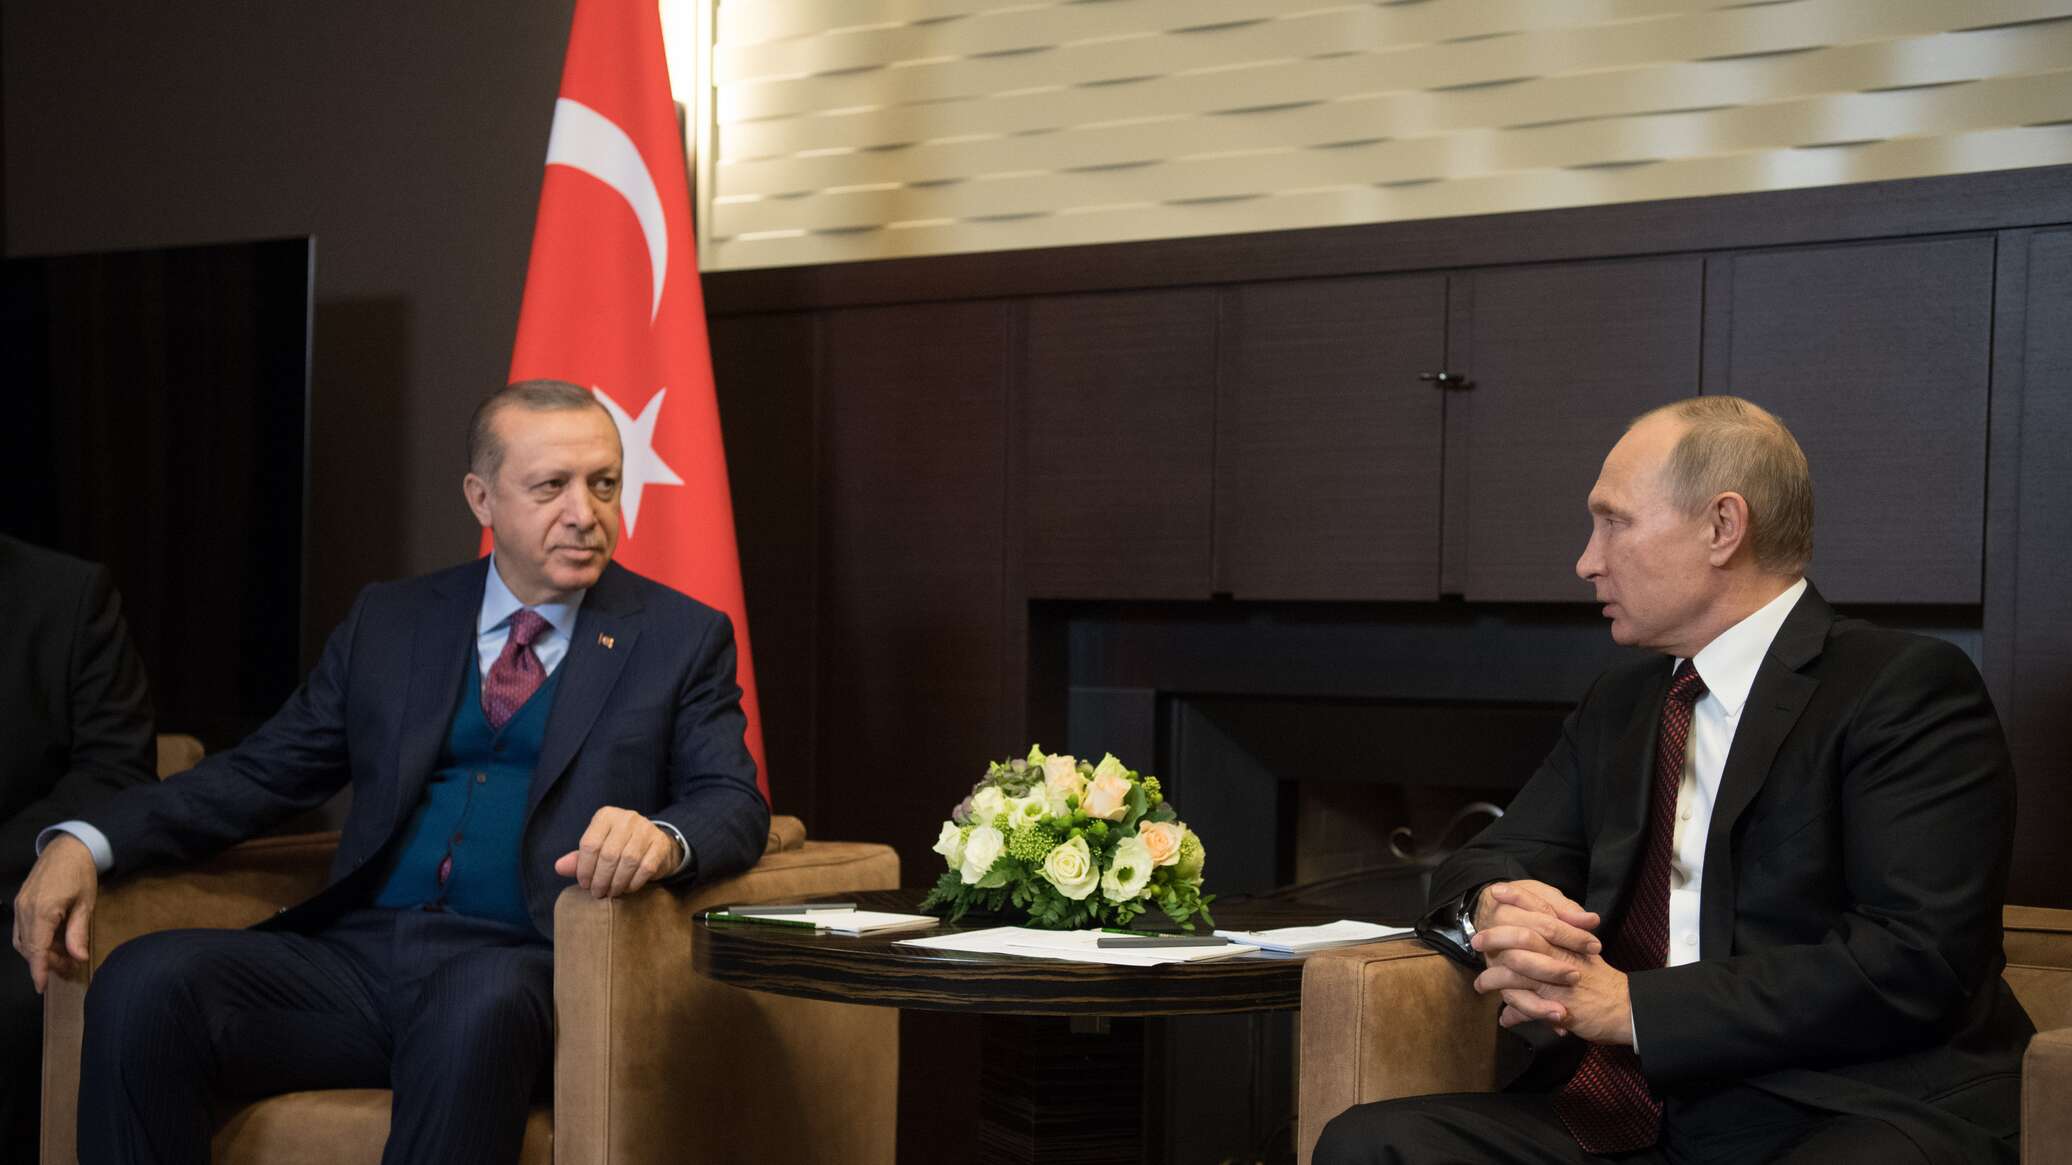 الكرملين: بوتين وأردوغان يعربان عن قلقهما حيال تصاعد العنف بين الفلسطينيين والإسرائيليين